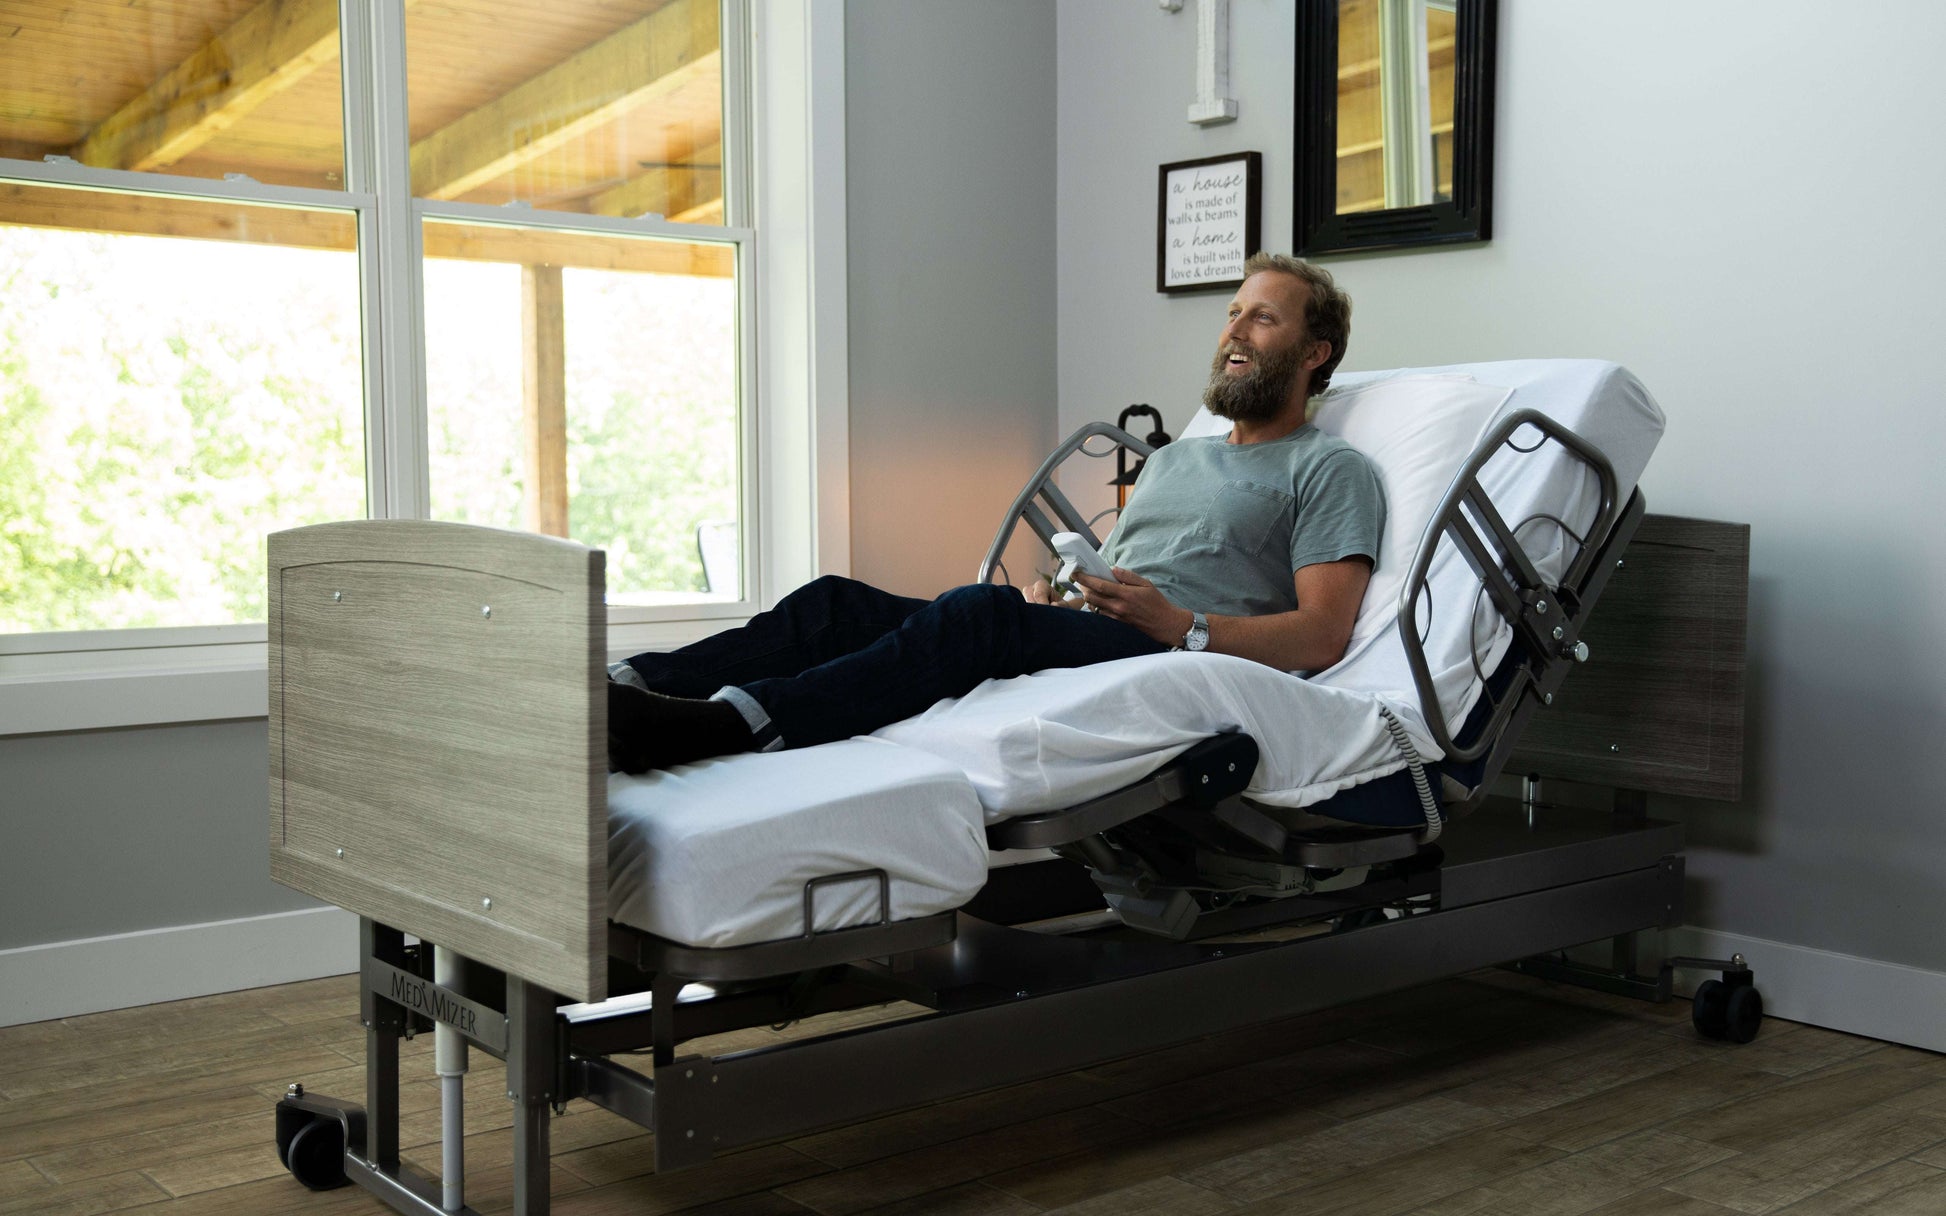 Med-Mizer ActiveCare SafeTurn Rotating Hospital Bed